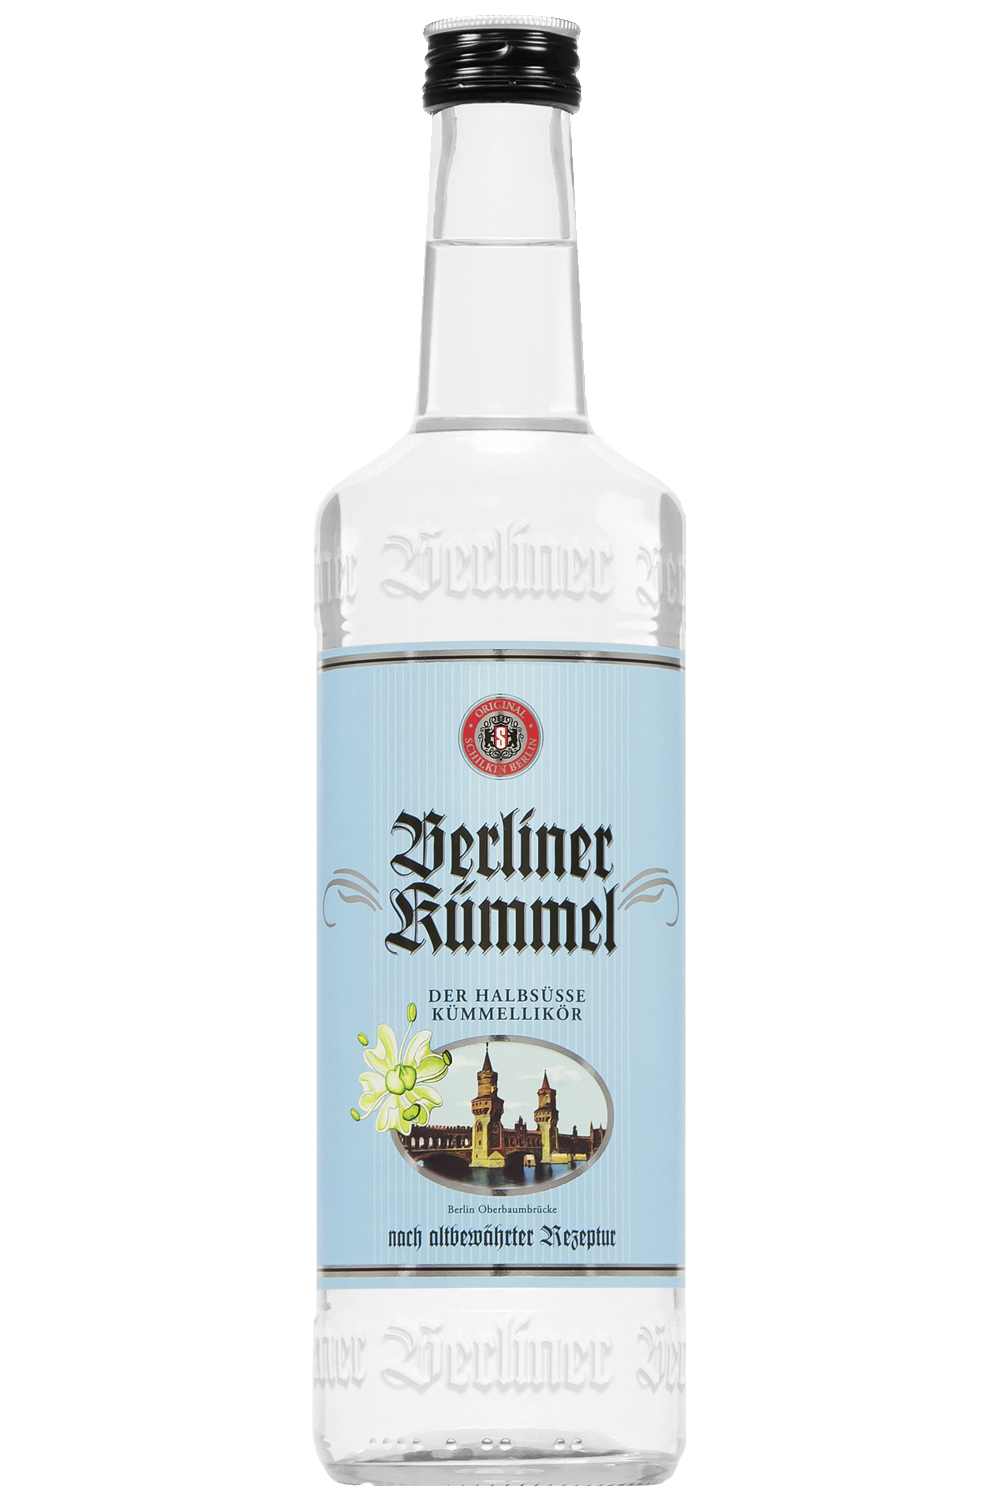 Original Berliner Kümmel (Halbsüß) 0,7 Liter - Getraenke-Handel.com ist ...